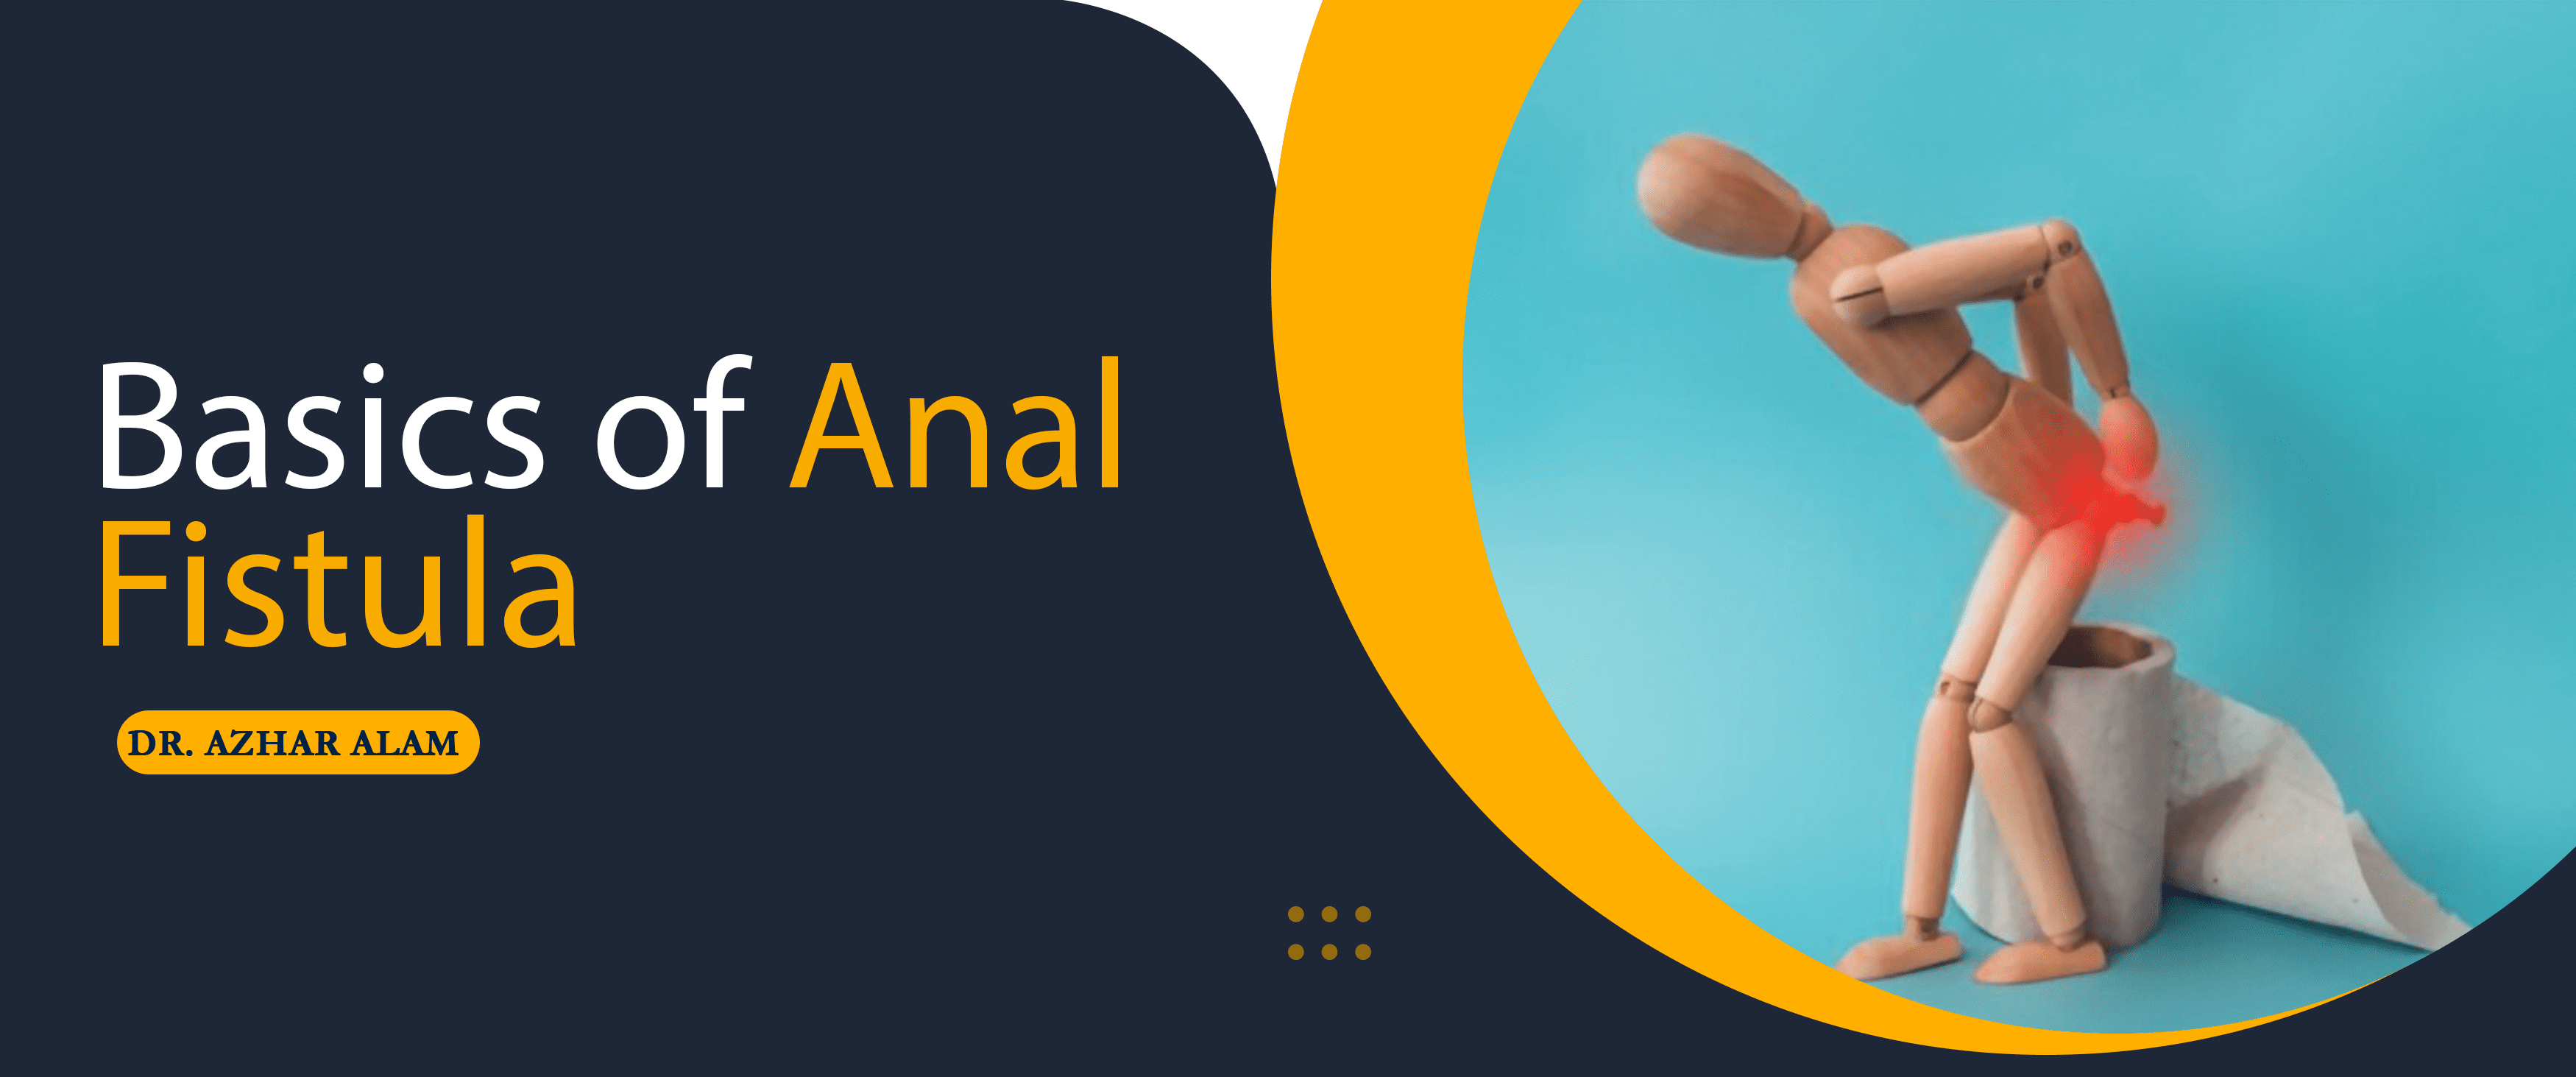 Basics of Anal Fistula